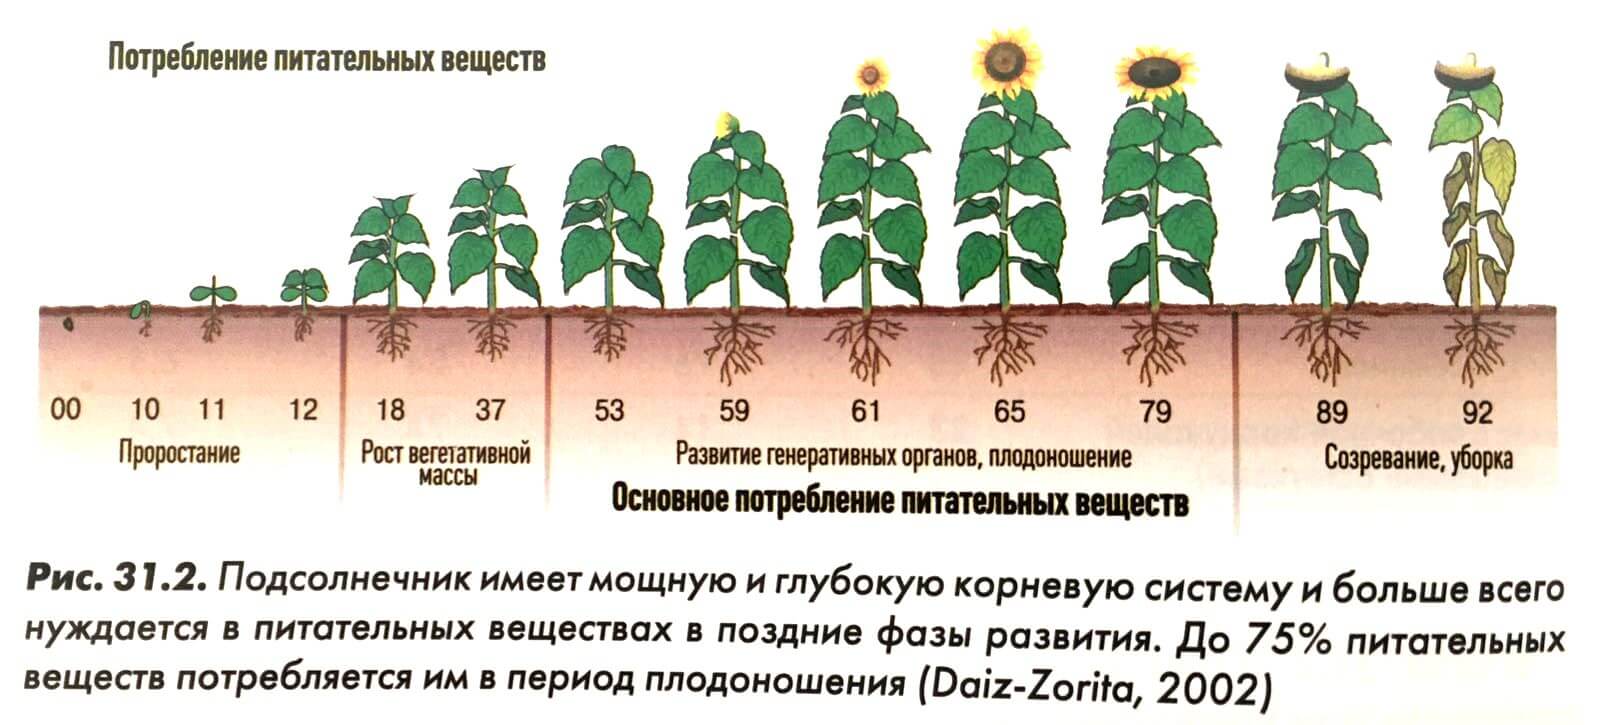 ᐉ овощ горох: посадка и уход в открытом грунте, фото, выращивание из семян, уборка и хранение - roza-zanoza.ru